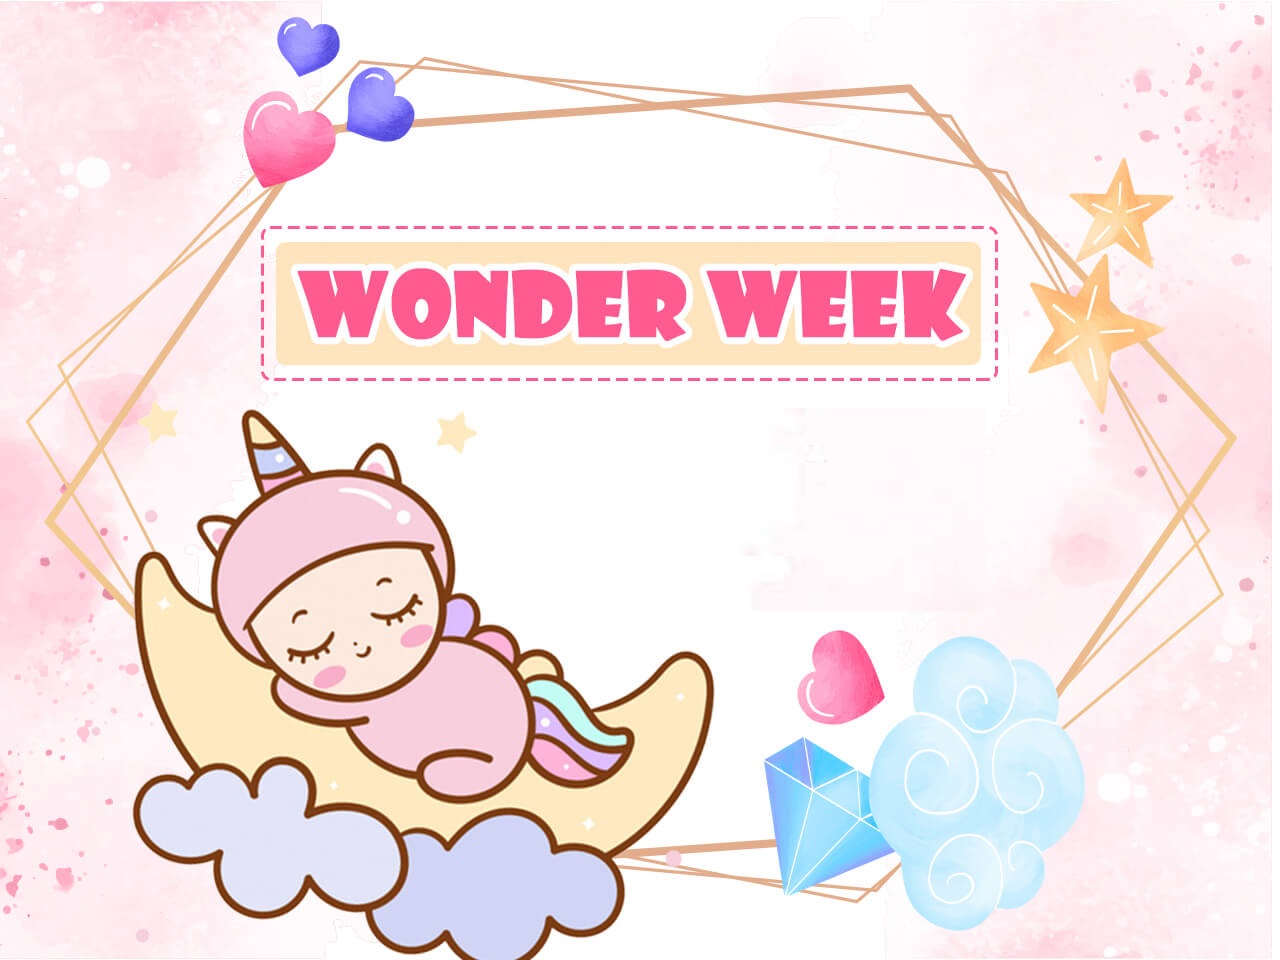 Tuần khủng hoảng của bé (Wonder week)